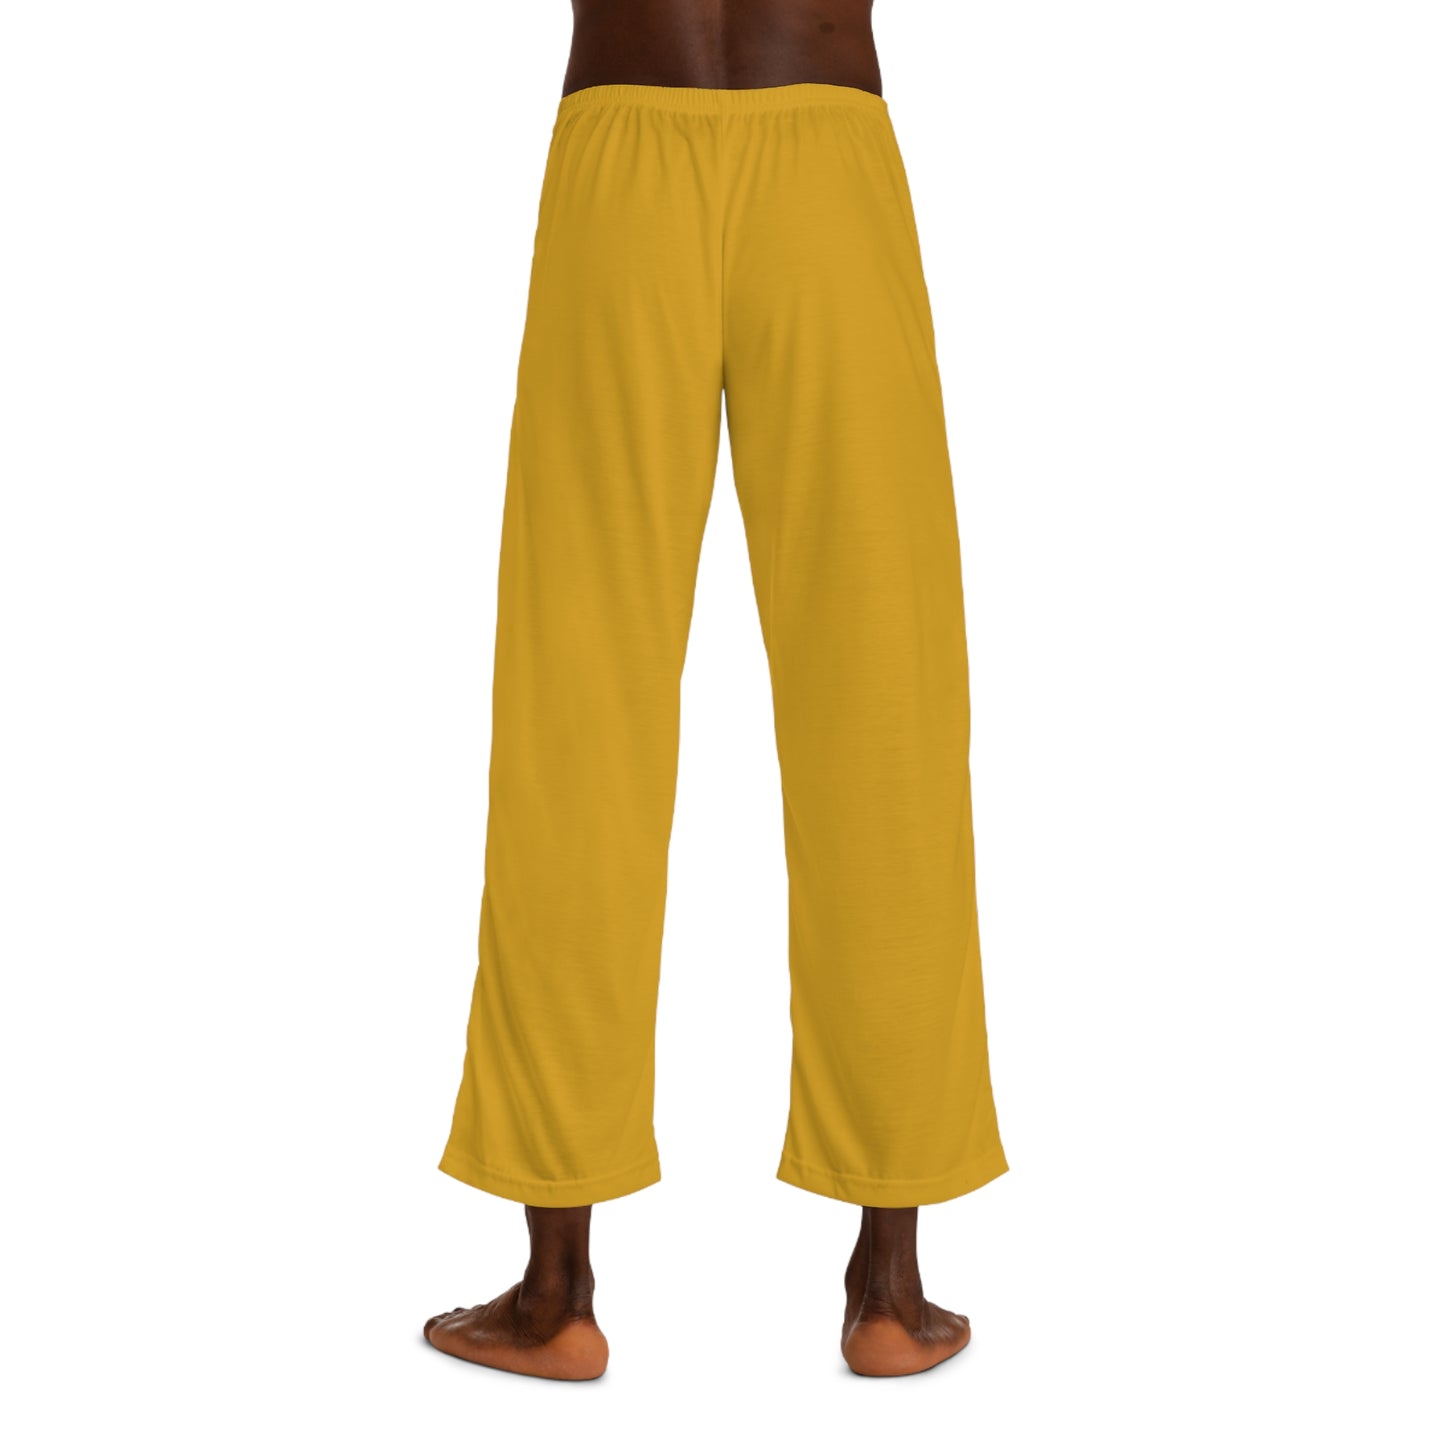 DAA520 Goldenrod - Pantalon de détente pour hommes